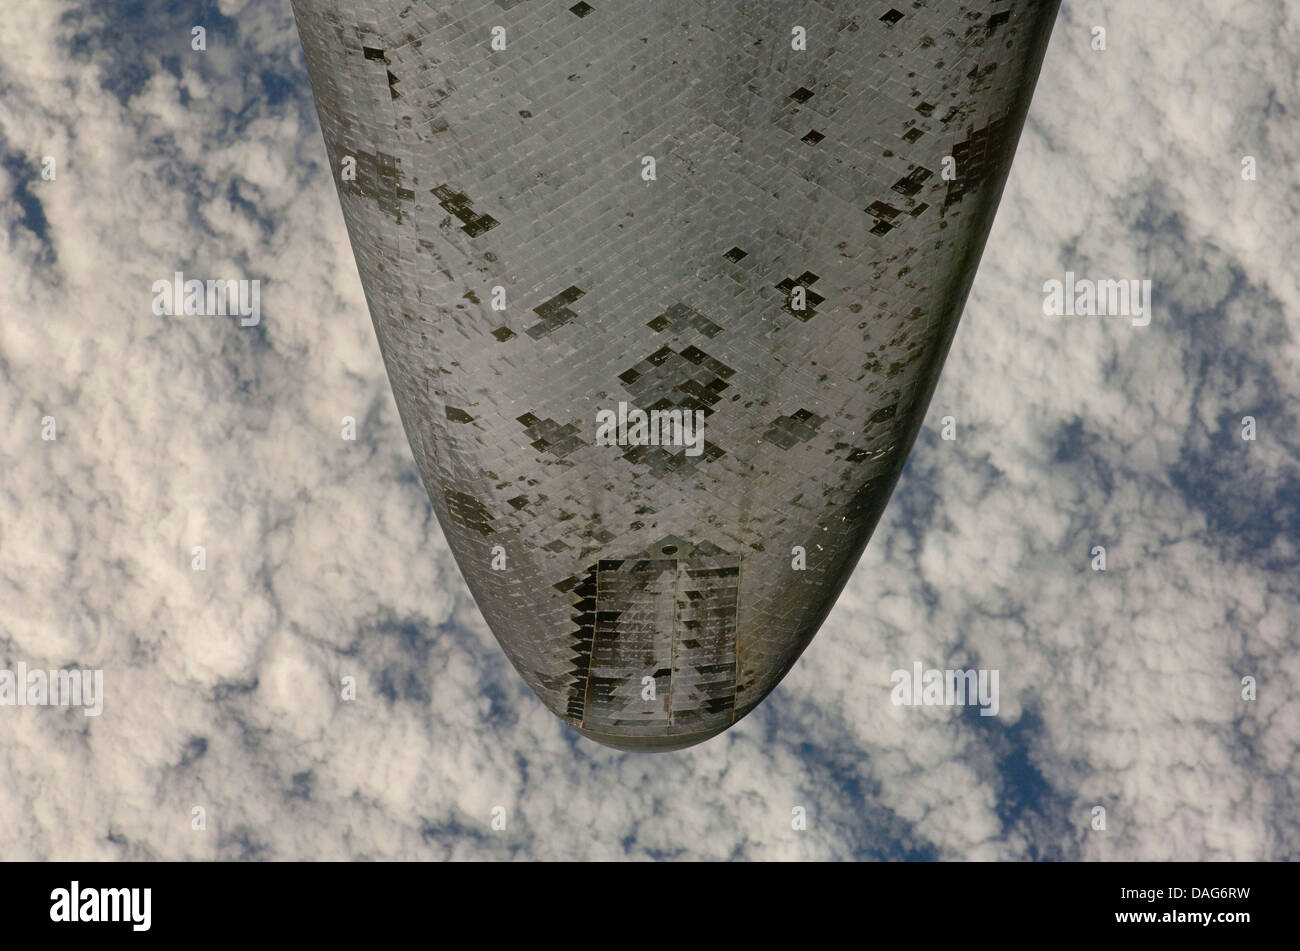 Underbelly della navetta spaziale Endeavour fotografato per ispezione di routine. Versione ottimizzata di originale immagine della NASA la NASA di credito Foto Stock